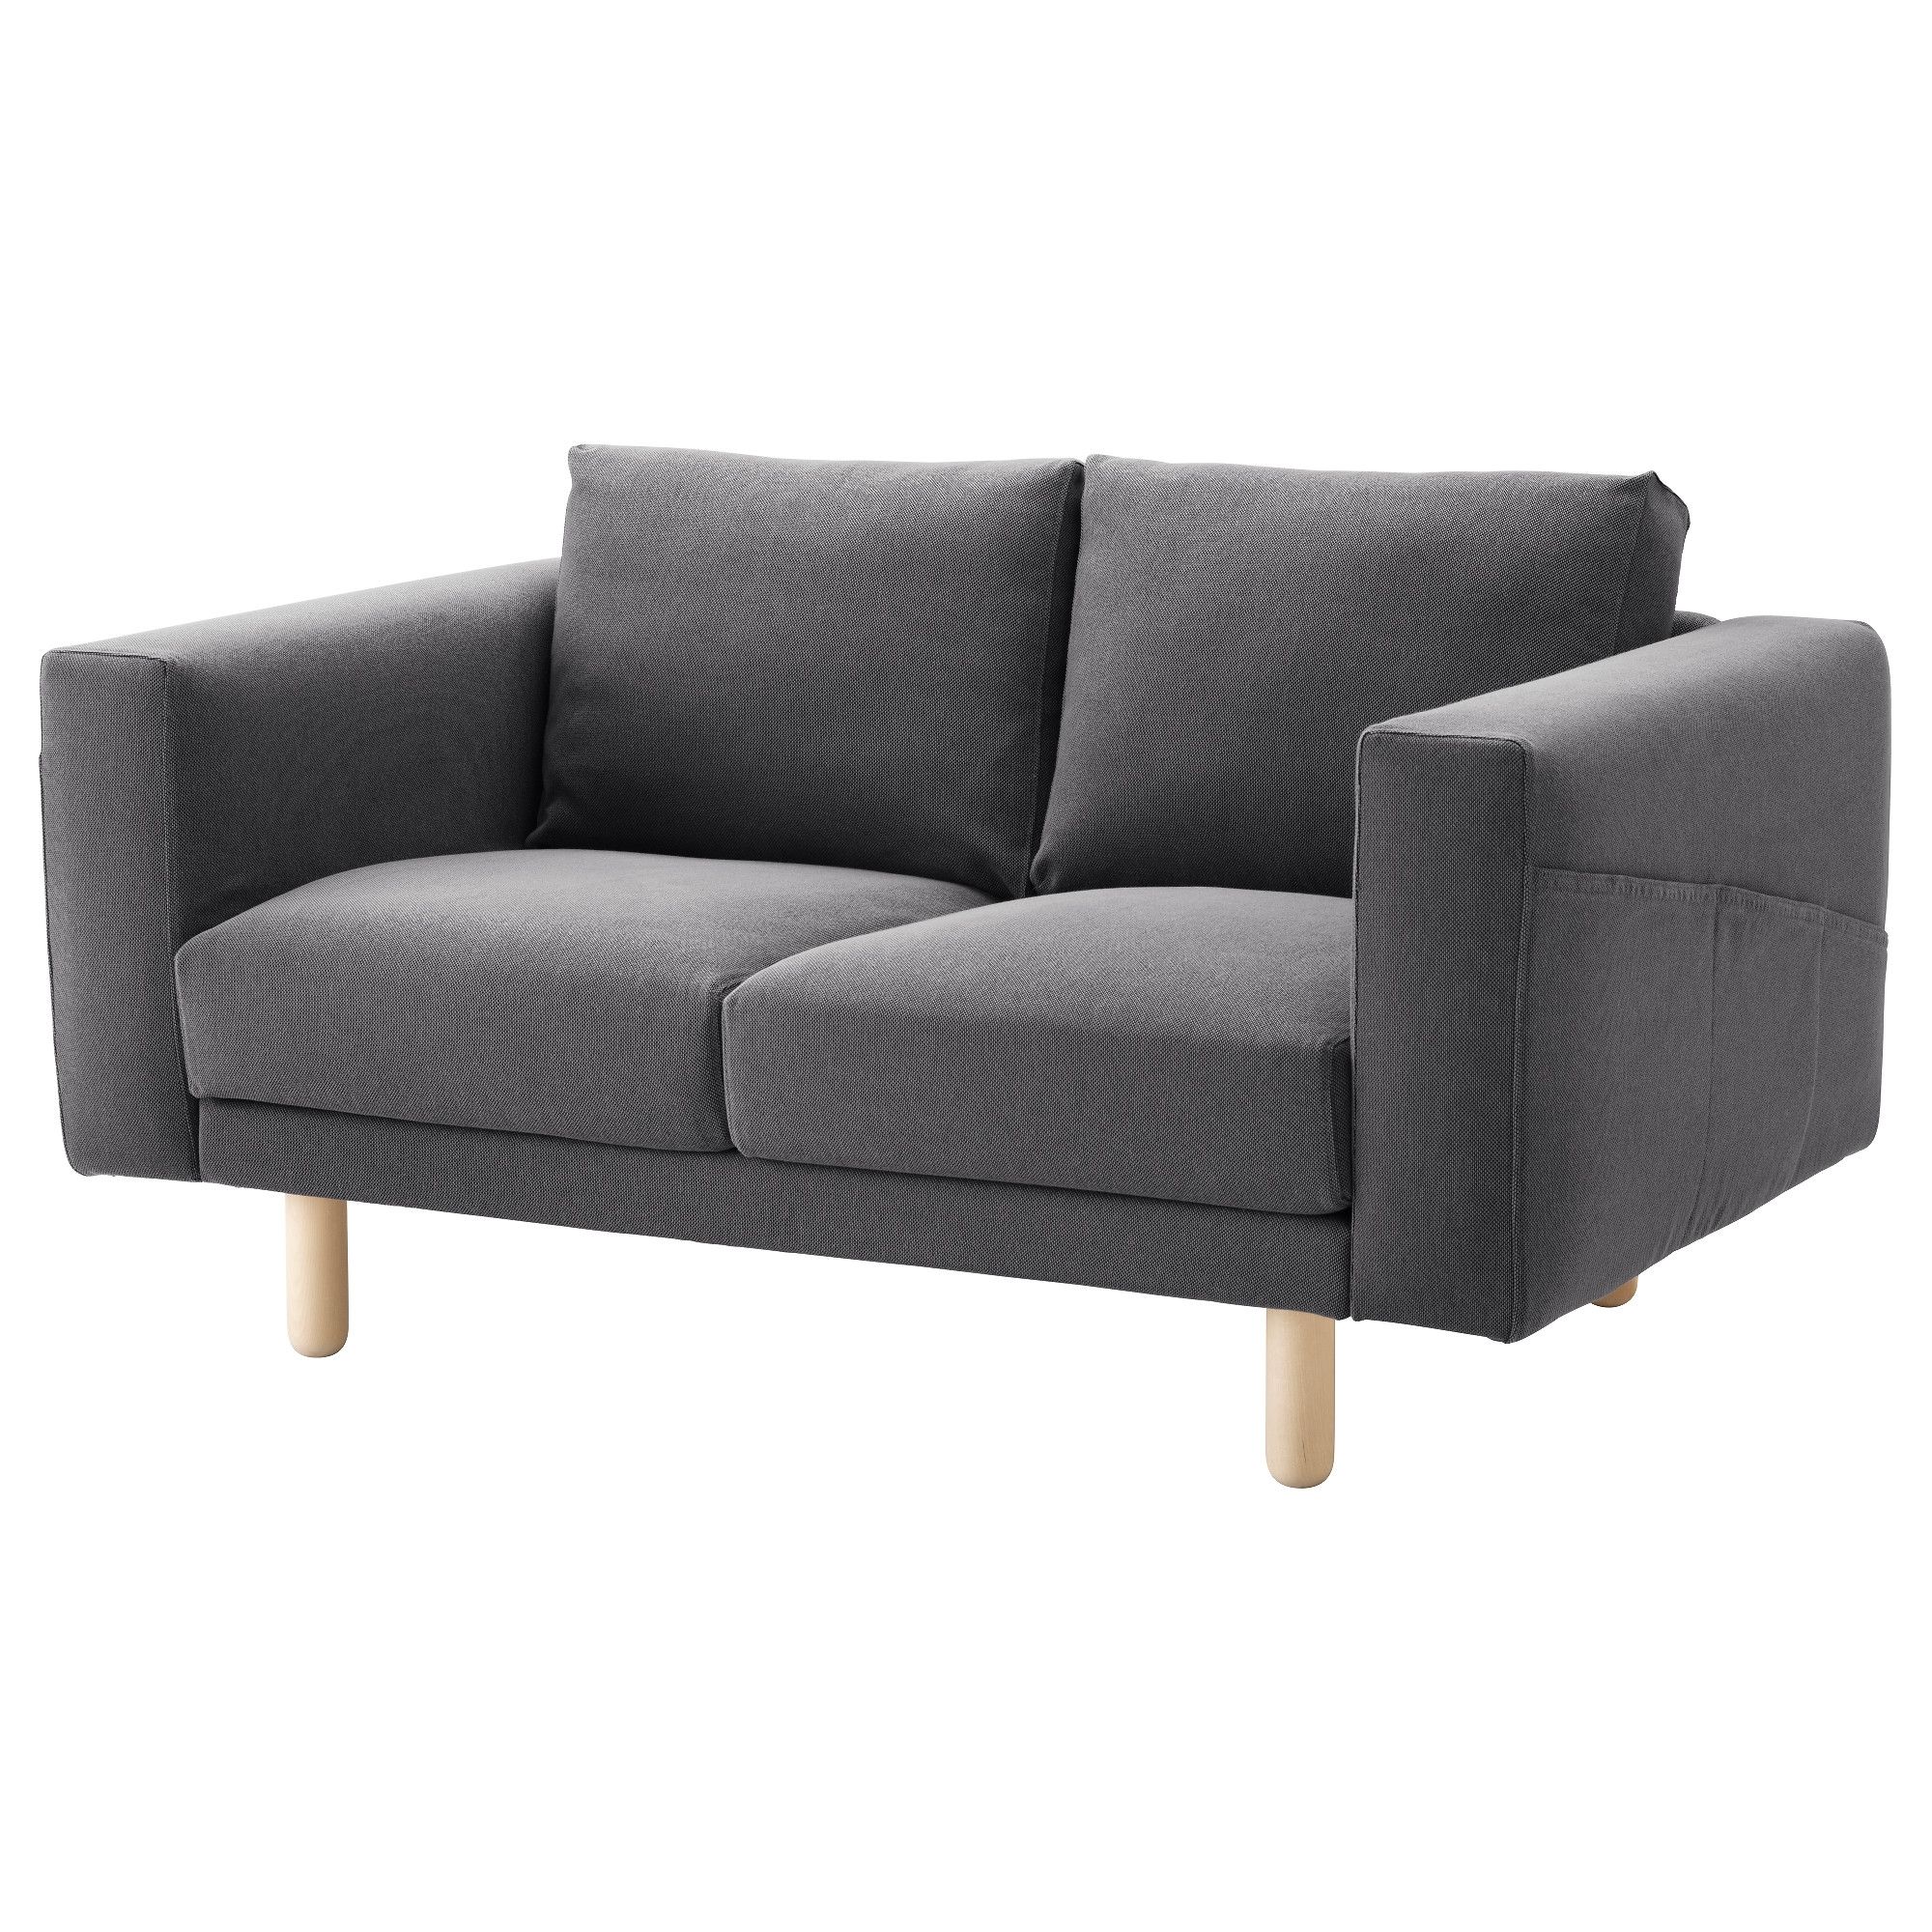 Two Seater Sofas | Ikea Ireland – Dublin In Mini Sofas (View 5 of 10)